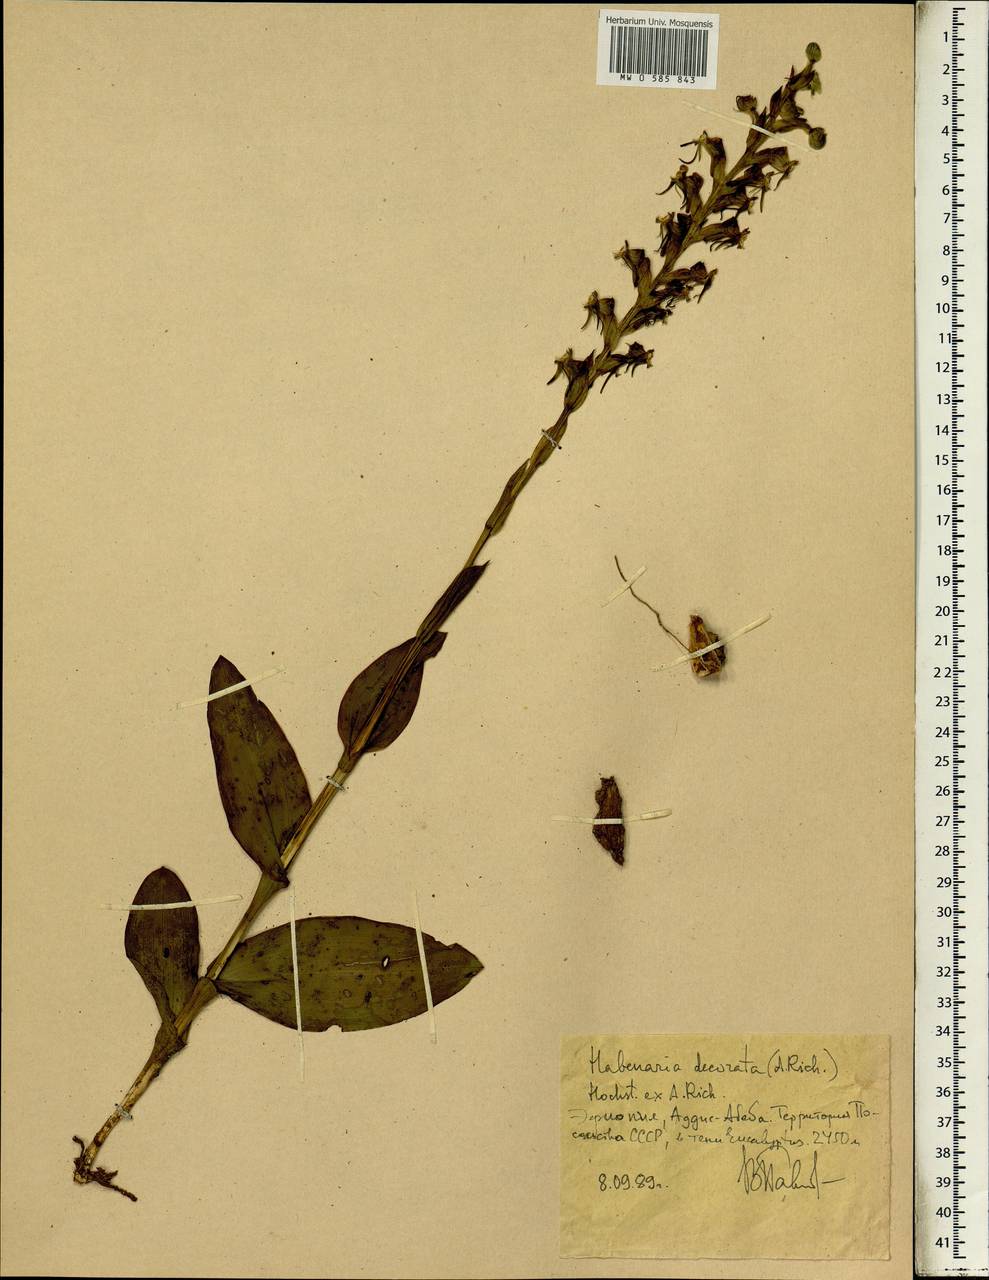 Habenaria decorata Hochst. ex A.Rich., Африка (AFR) (Эфиопия)